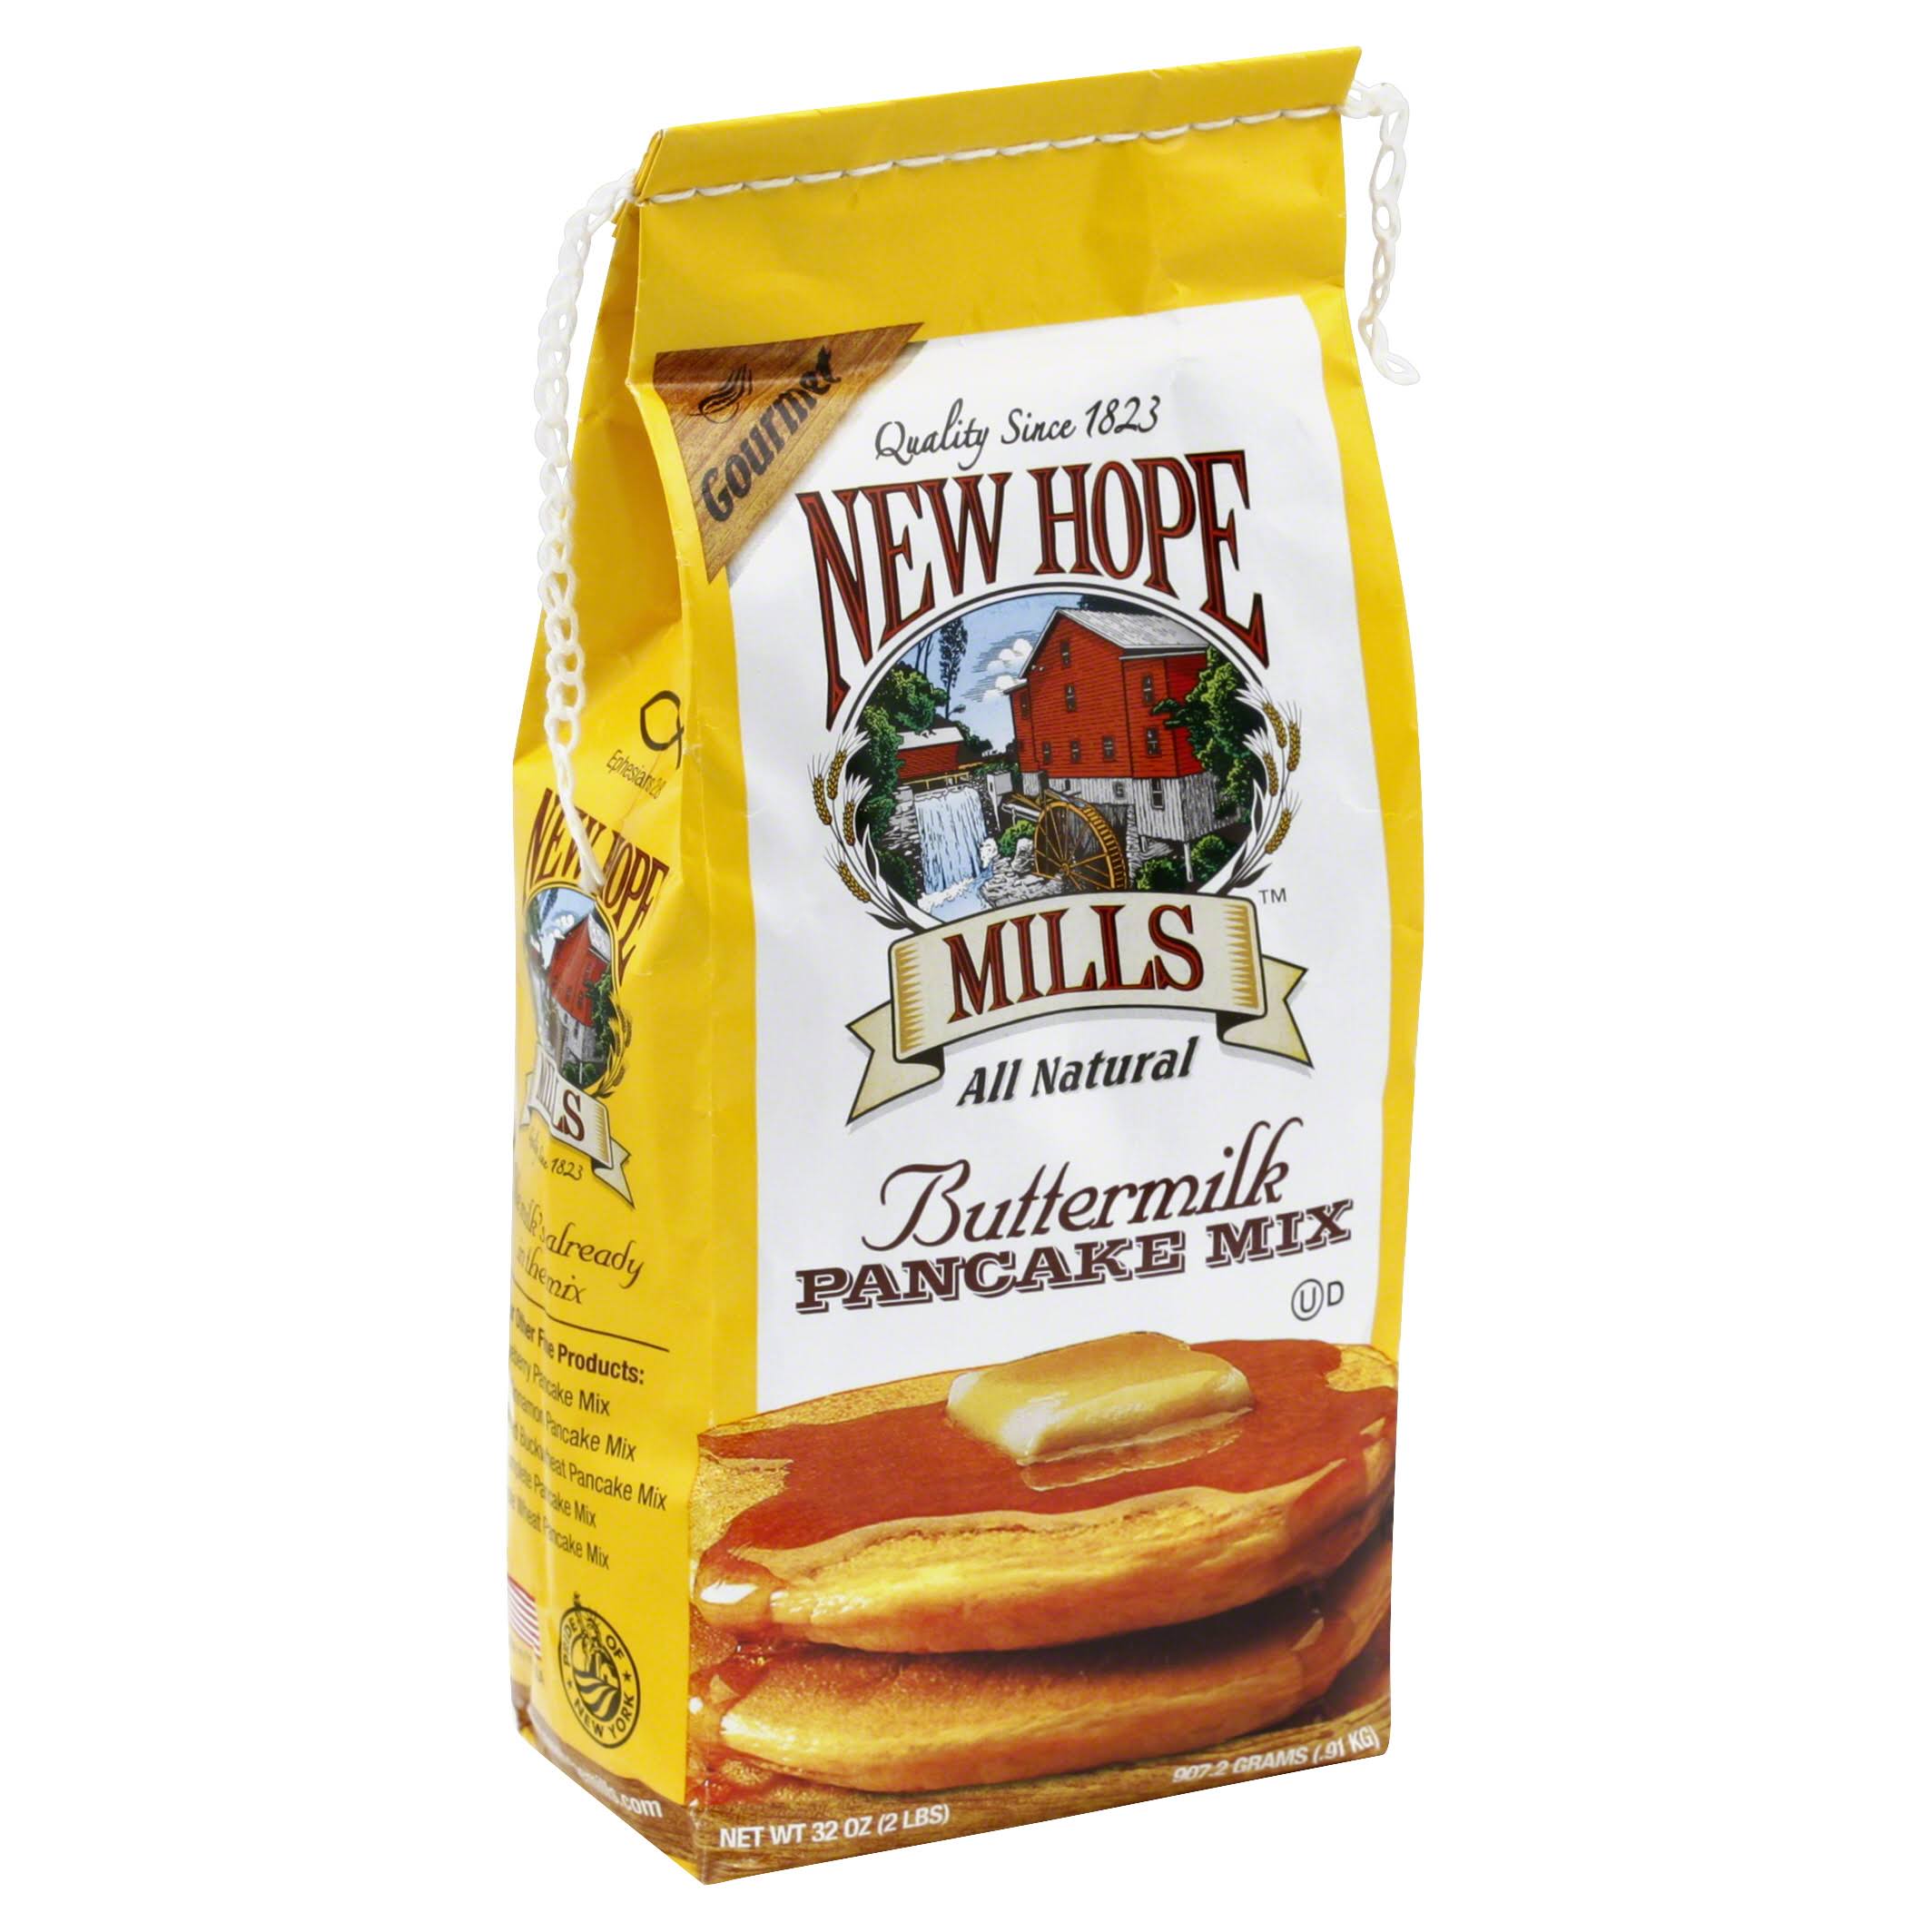 New Hope Mills Pancake Mix - Buttermilk, 2lb, 6pk